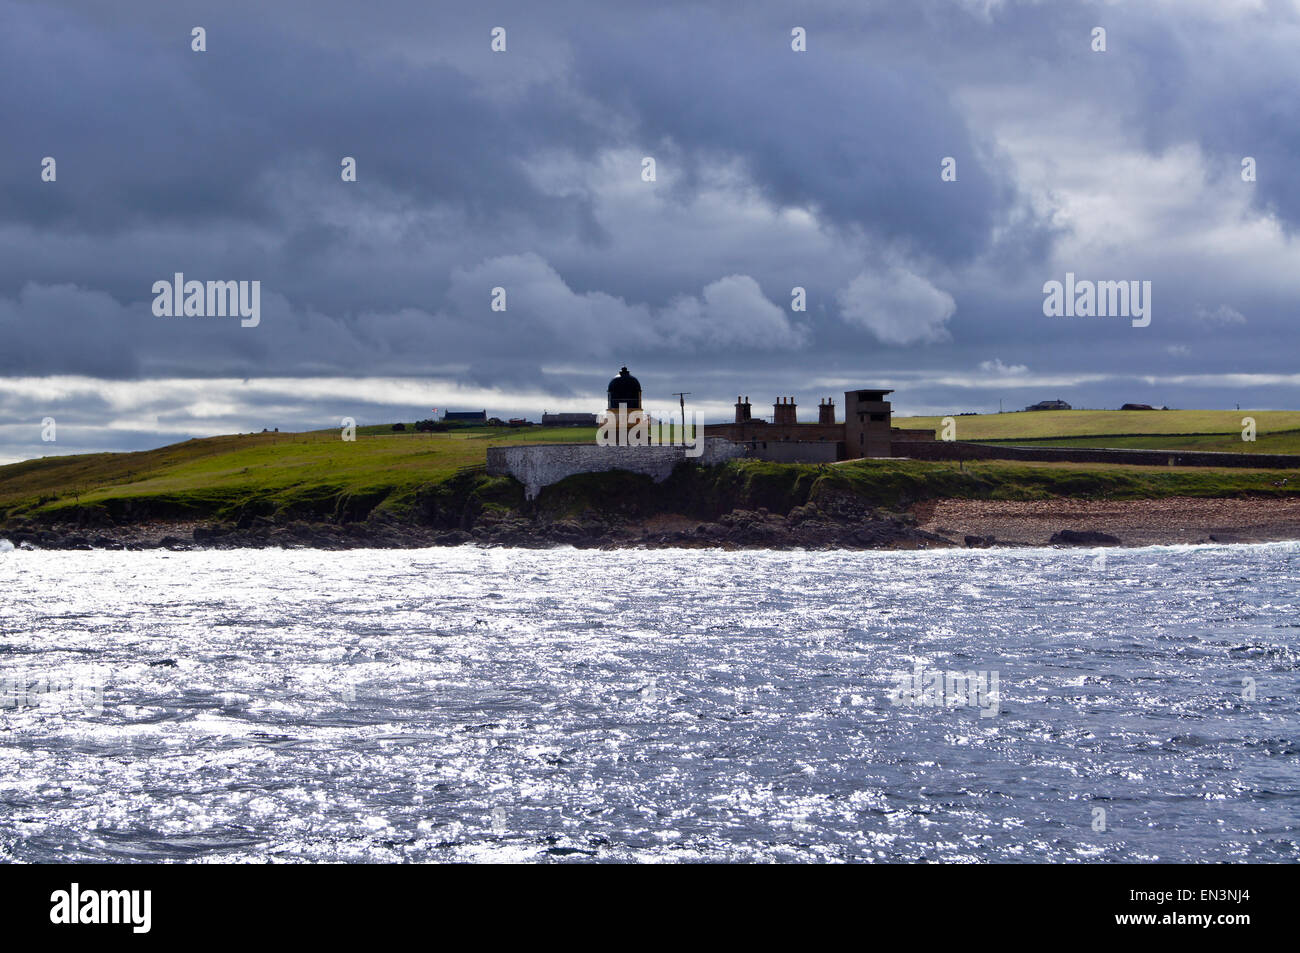 Hoy Low lighthouse by Alan Stevenson, 1851, Graemsay, Hoy Sound, Orkney islands, Scotland Stock Photo